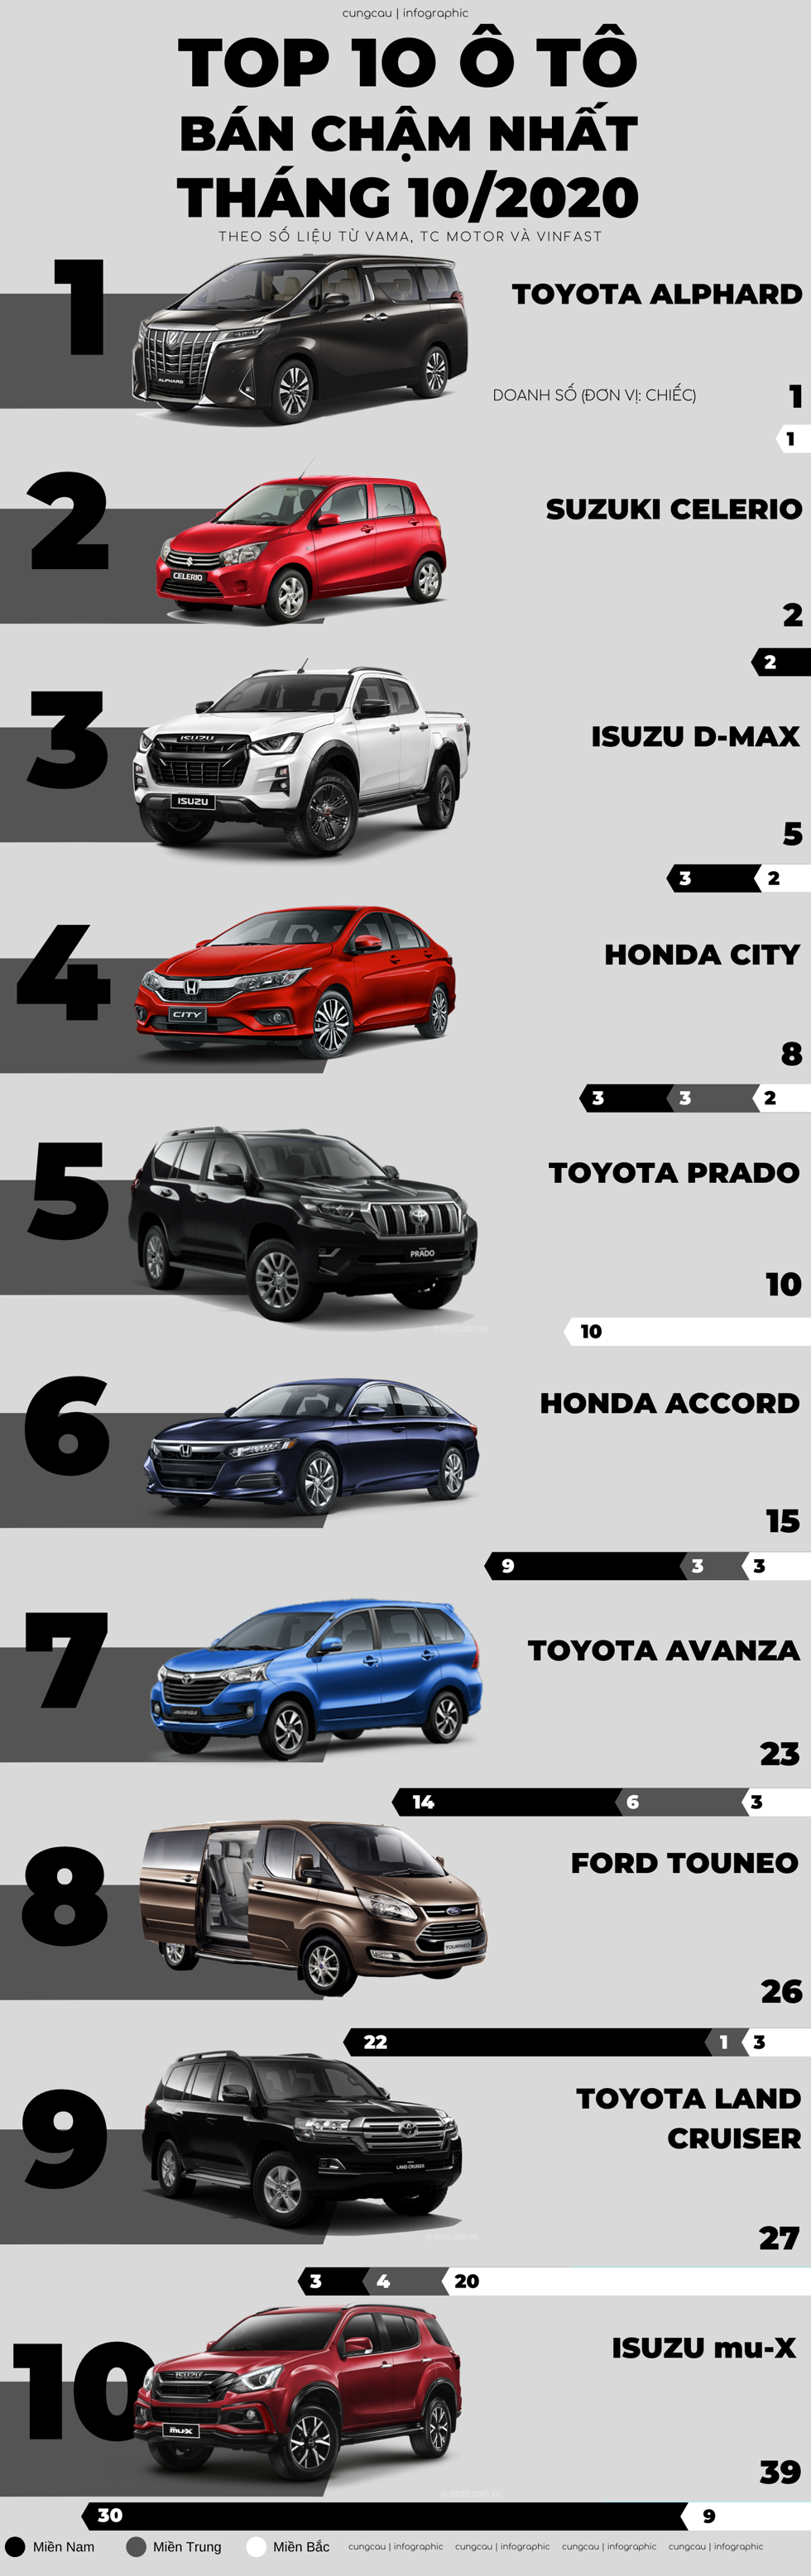 Top 10 ô tô ế nhất tháng 10/2020 bất ngờ gọi tên Honda City 